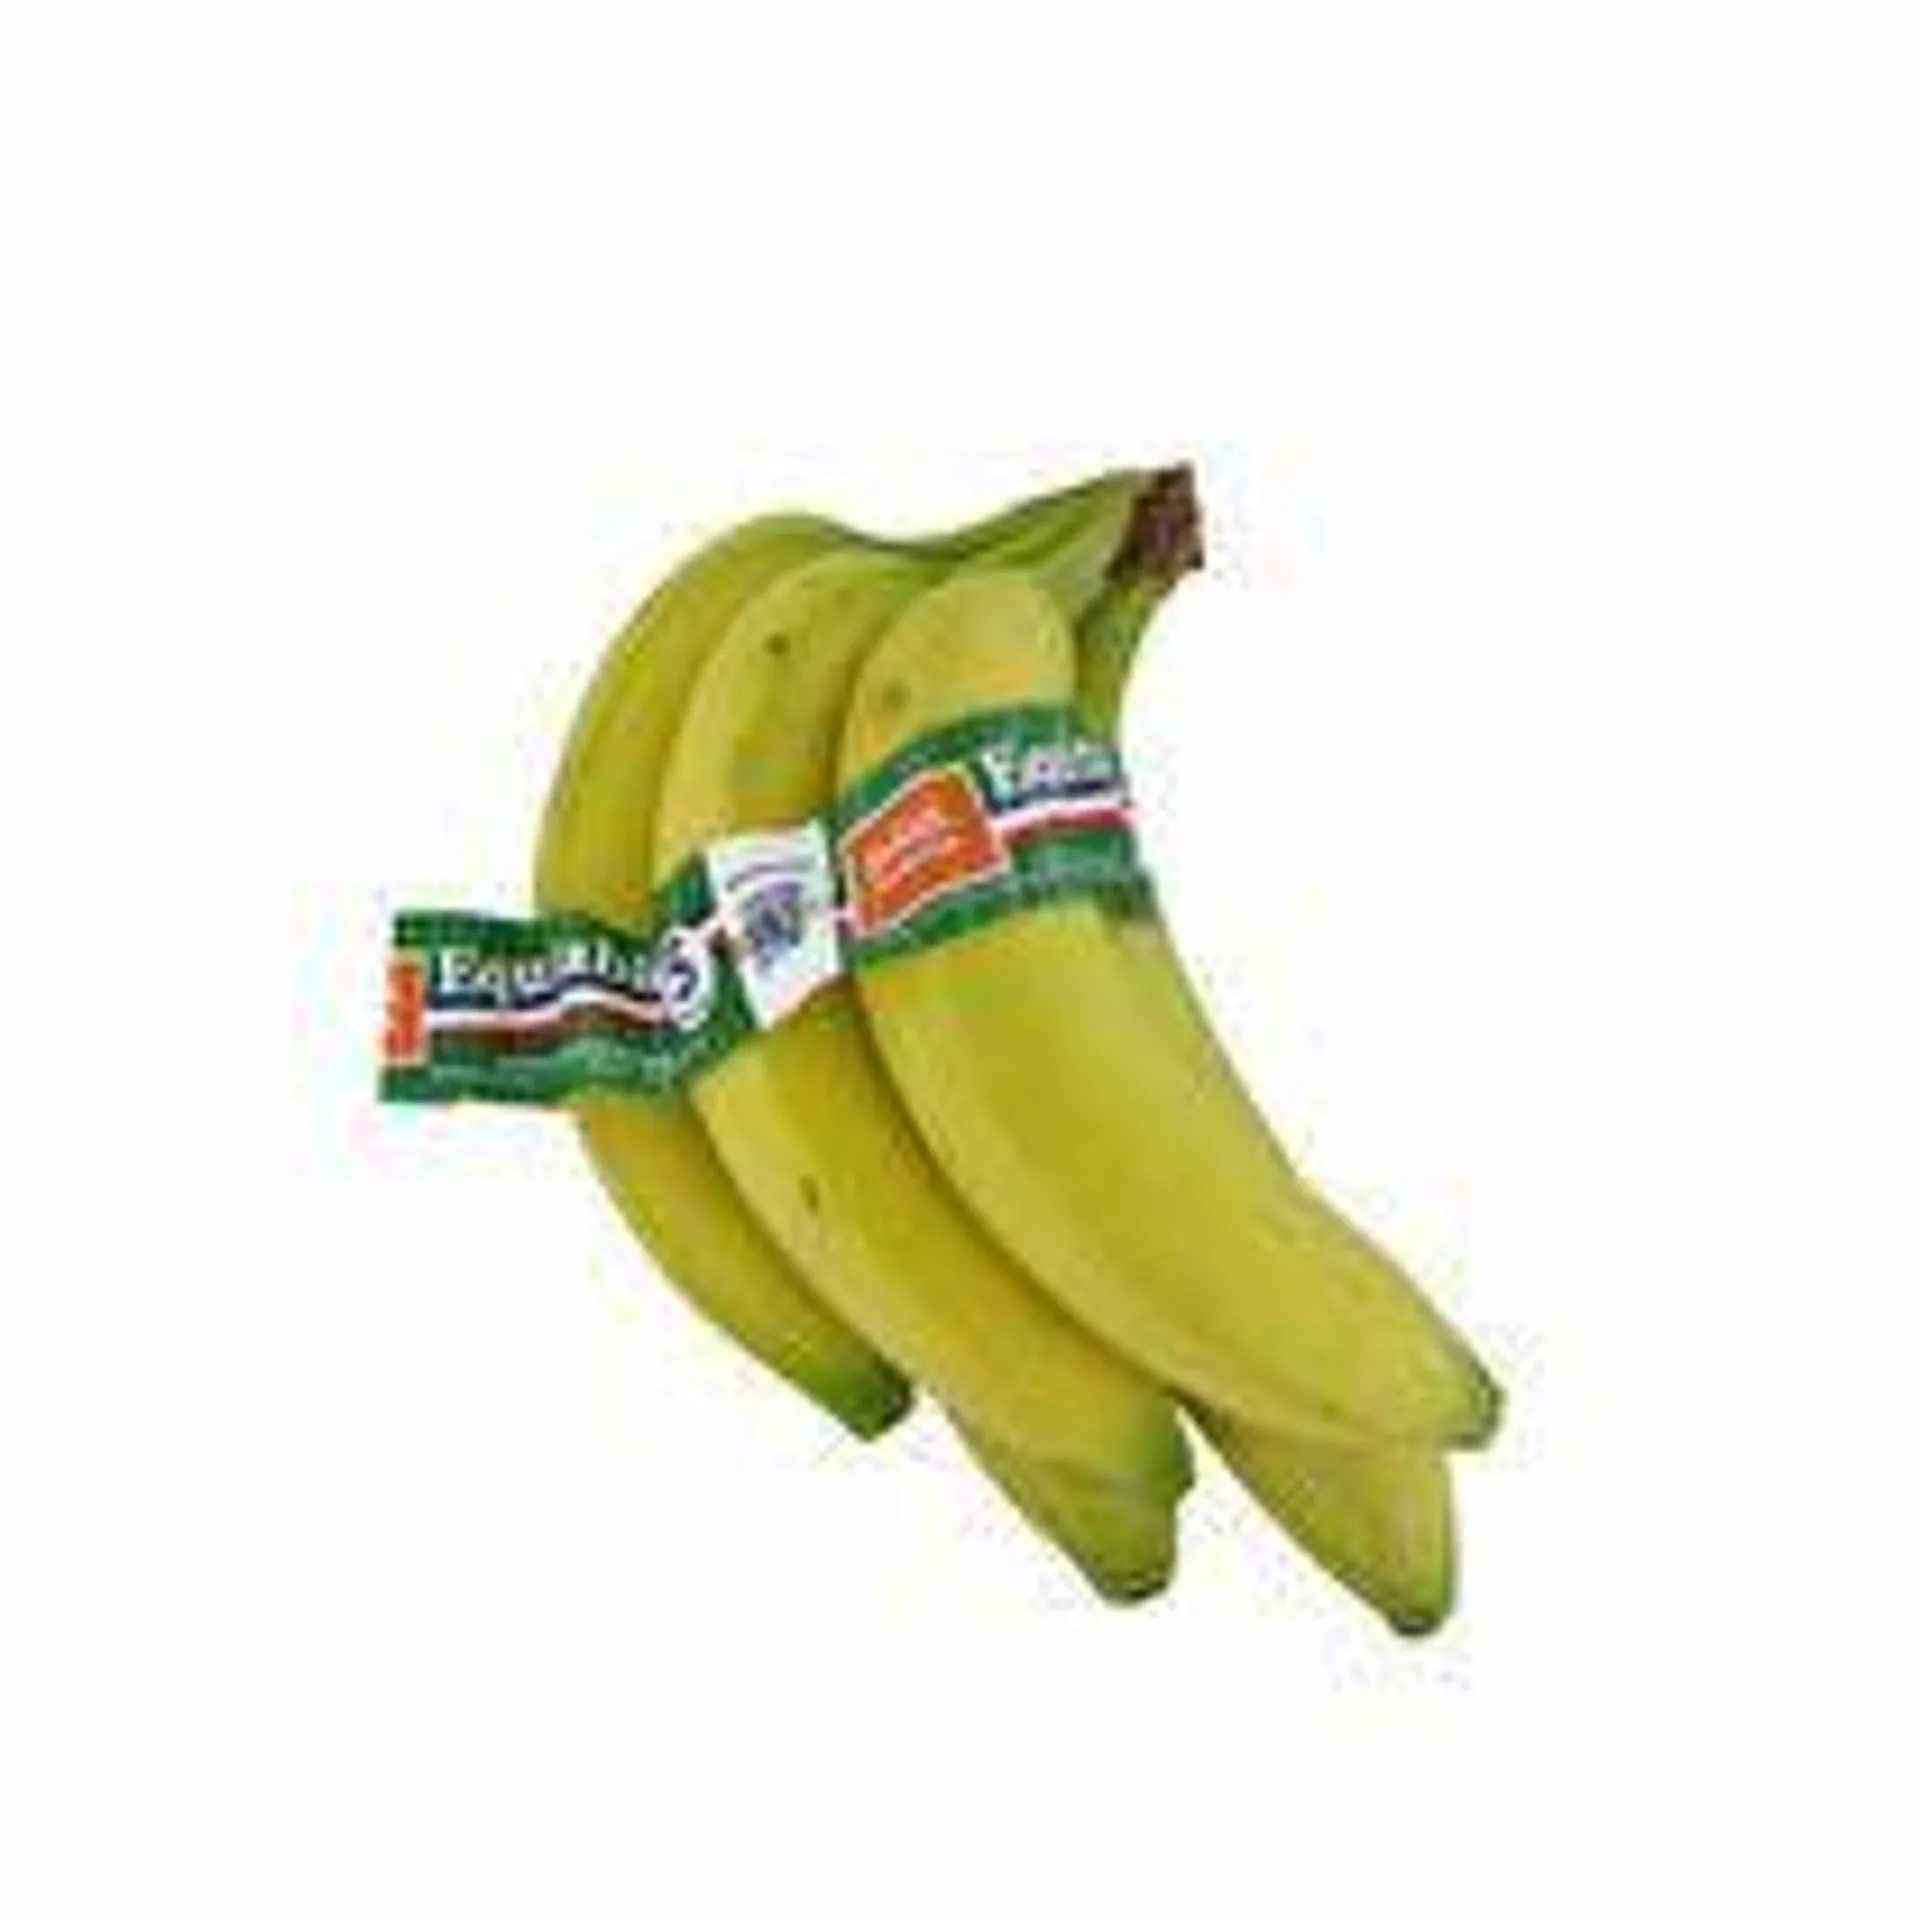 banane francaise equitable 5 fruits